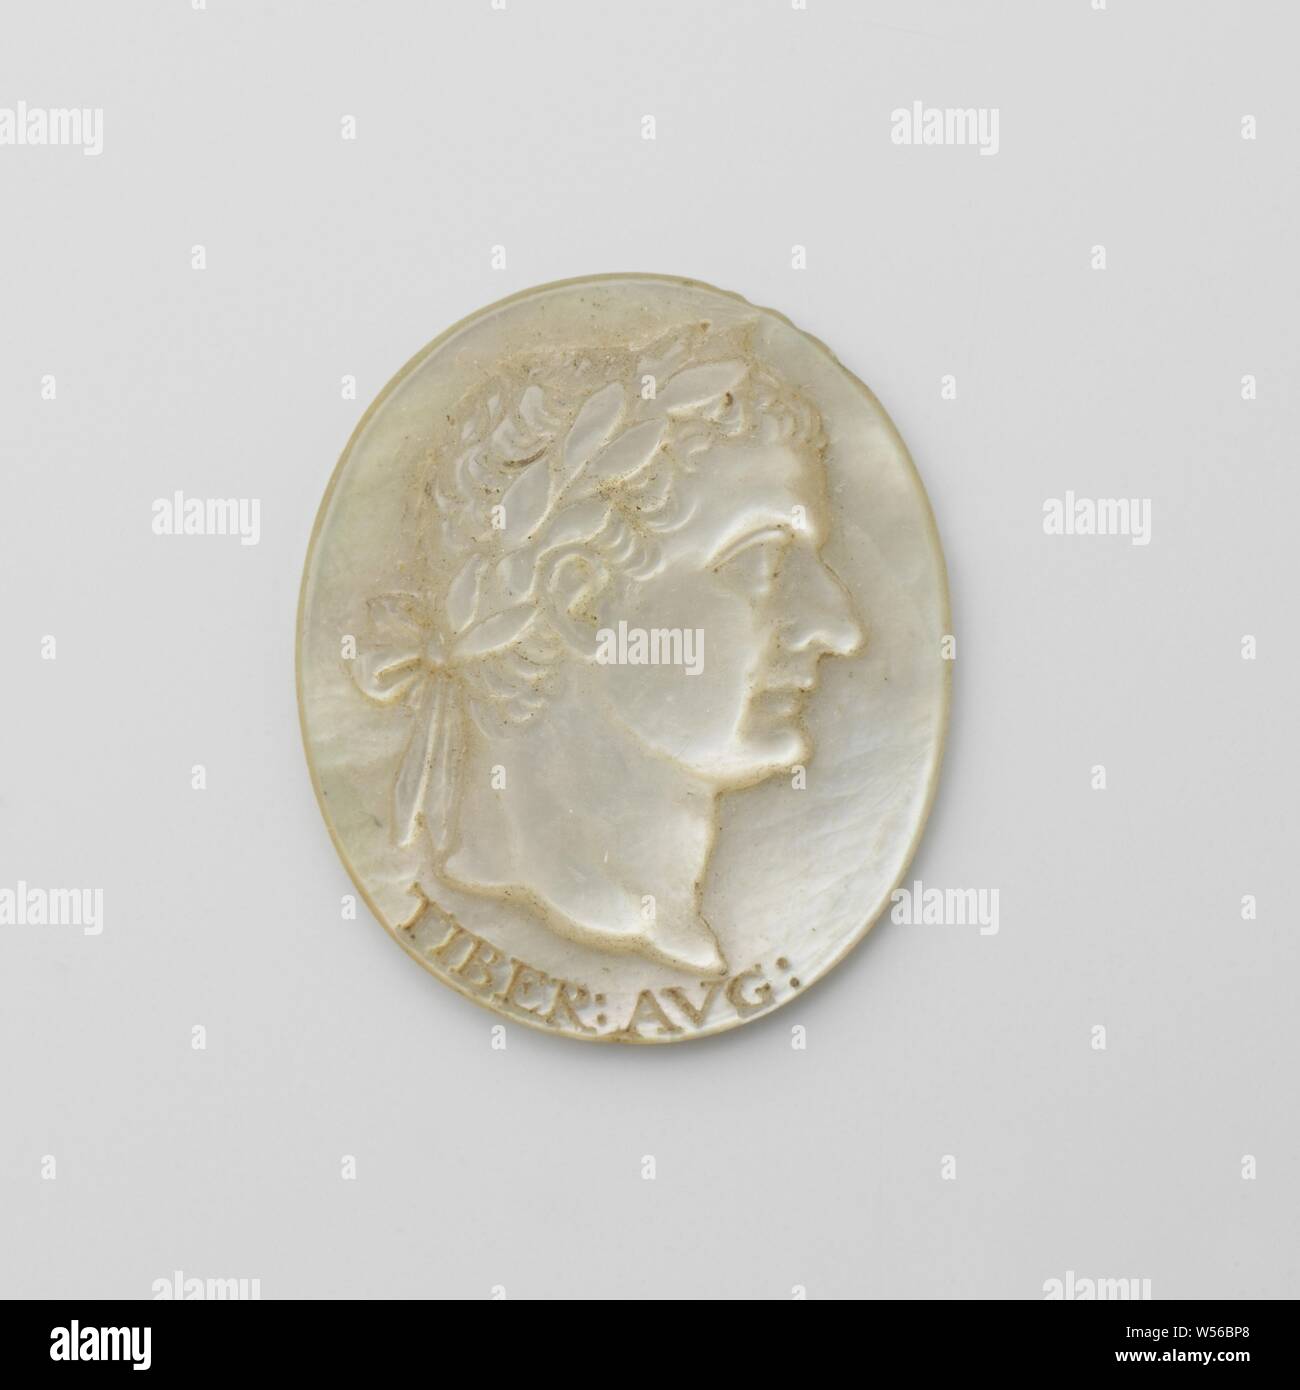 Tiberius Julius Caesar Augustus, ein Medaillon aus Perlmutt, mit einem Bild einer Römischen Kaiser, mit der Aufschrift: TIBER: AVG., anonym, Niederlande (möglicherweise), C. 1700 - C. 1800, Perlmutt, h 2,2 cm × w 1,8 cm Stockfoto